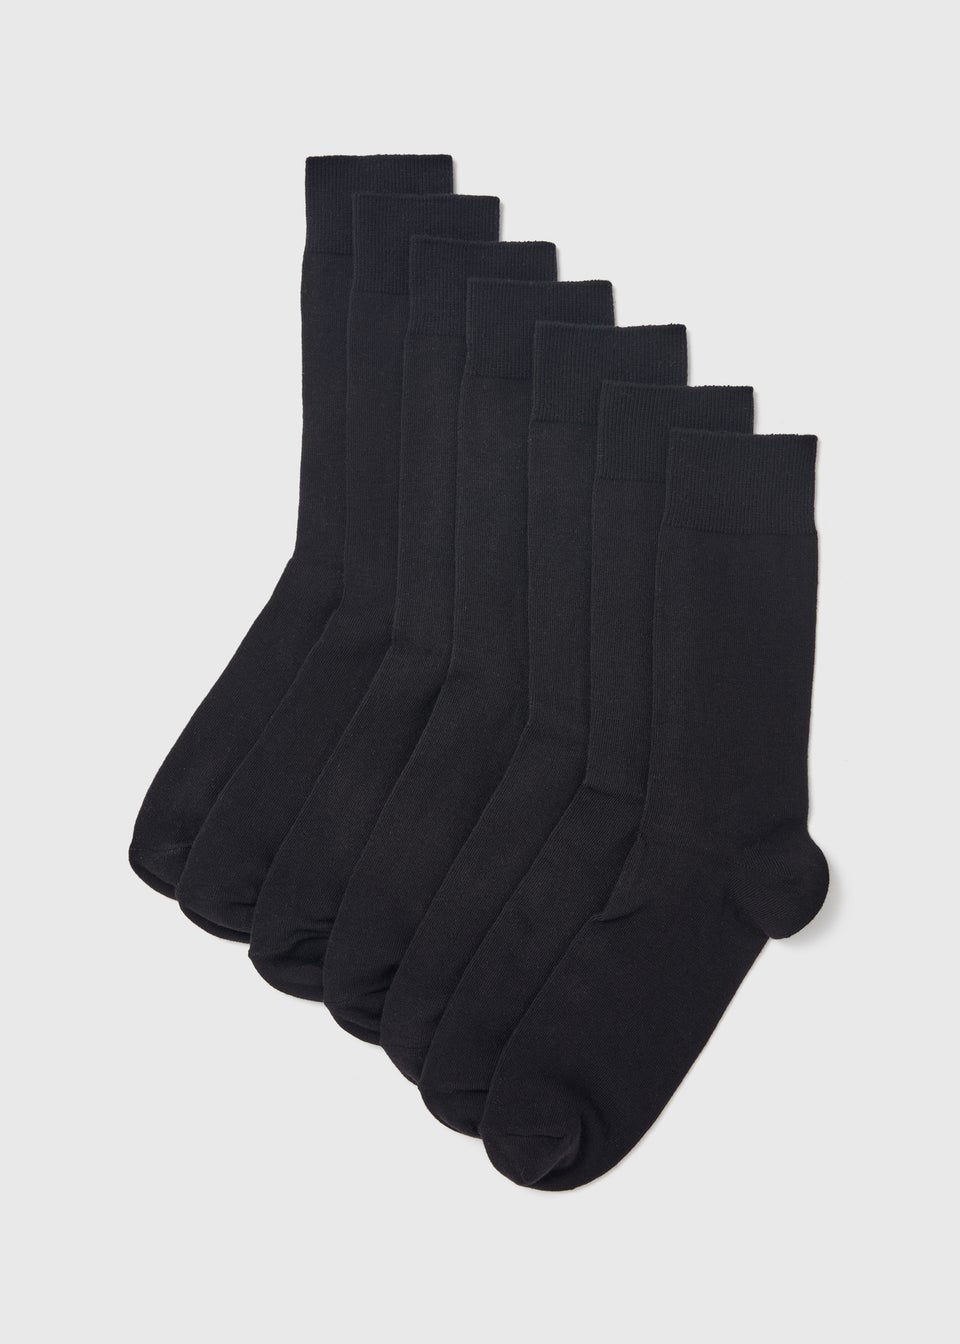 Men's Black Socks | Multi Pack Black Socks - Matalan